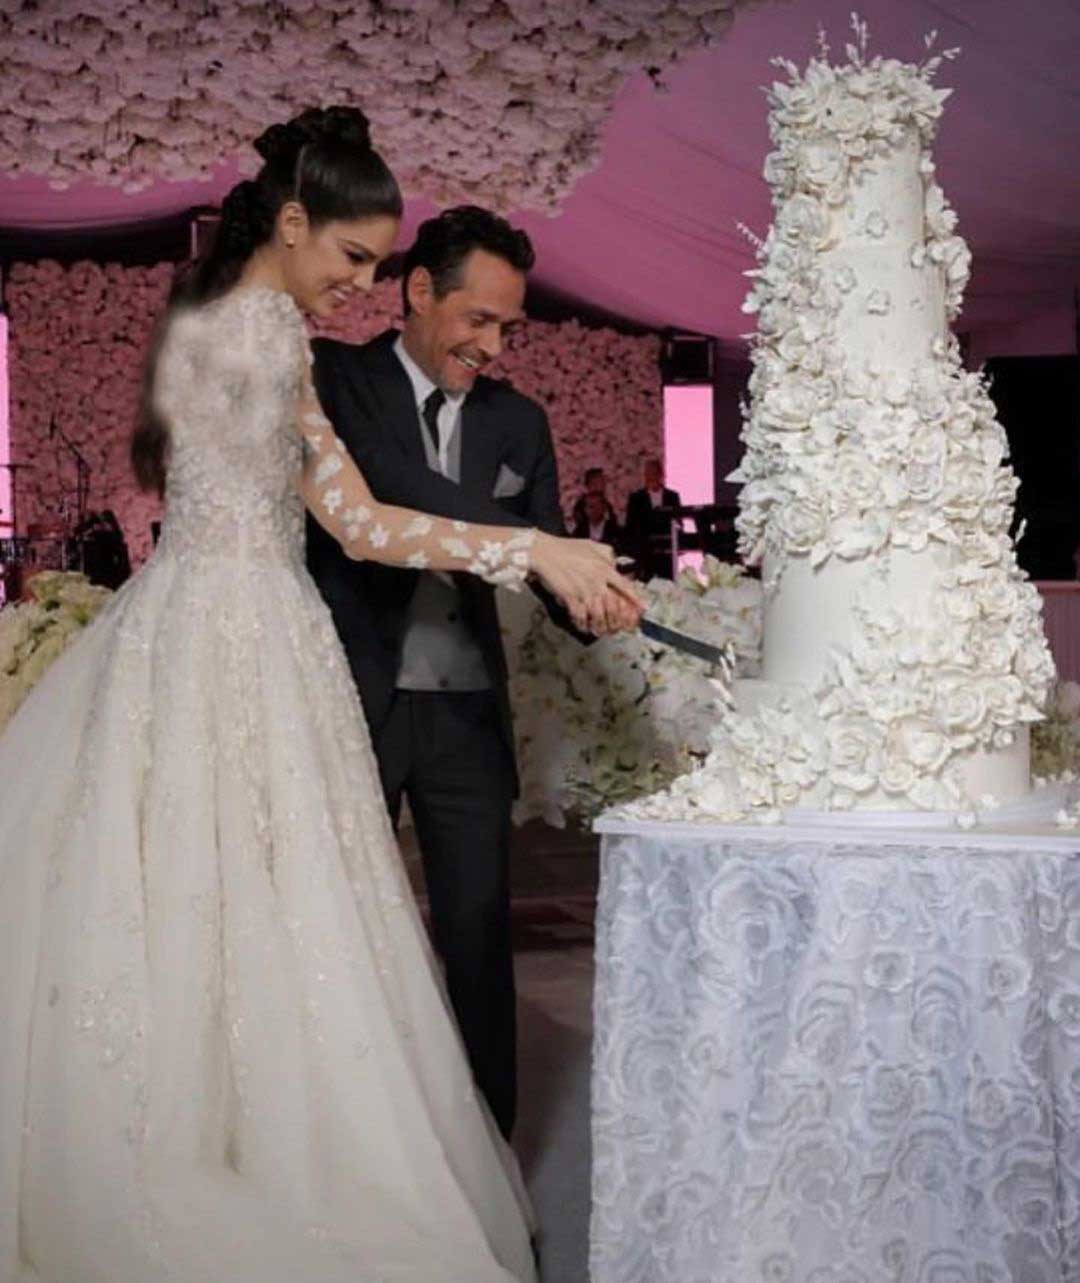 تصاویر پربازدید از عروسی مجلل دختر شایسته دنیا